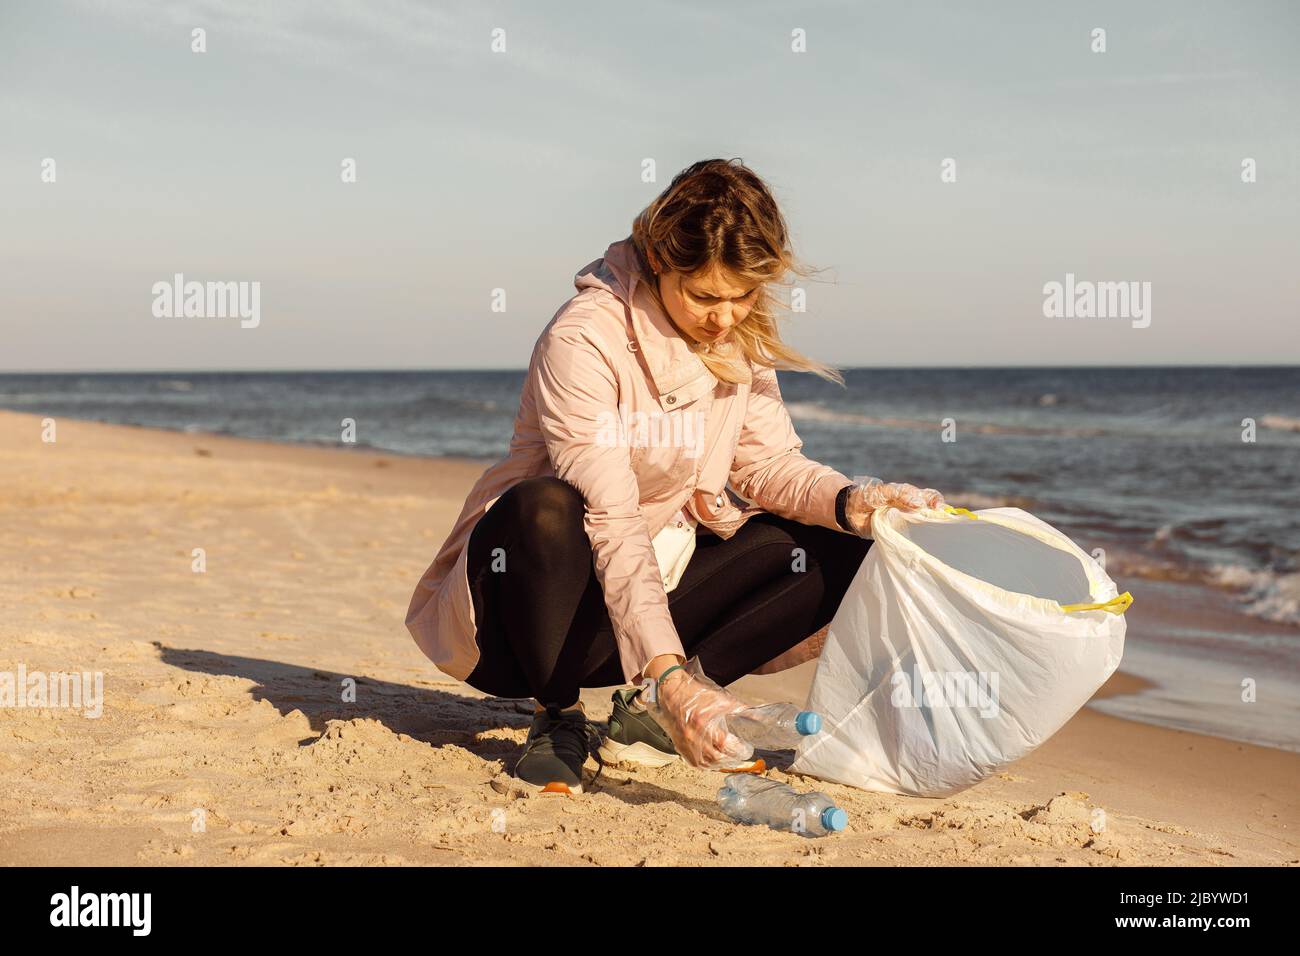 Militante féminine et assistante nettoyant la plage des déchets sous-marins, de la mer, de l'océan avec des déchets de plastique. Pollution écologique Banque D'Images